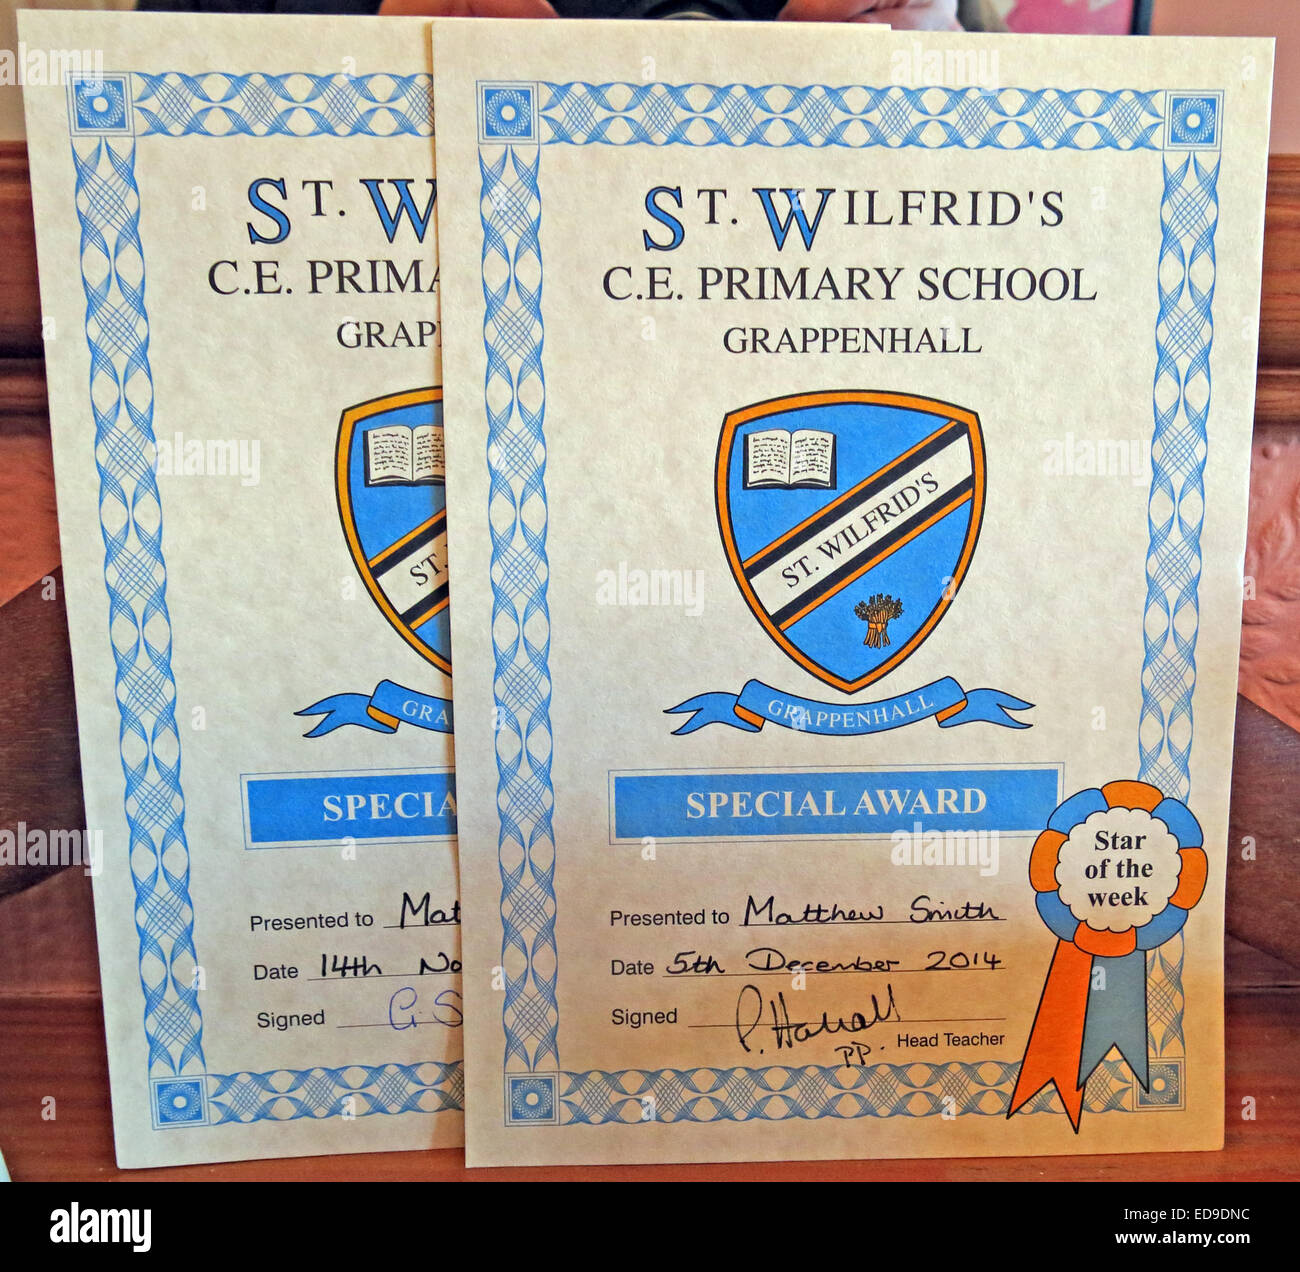 Prix spécial de l'école certificat de l'école primaire, St Wilfrids Grappenhall, Cheshire, England, UK Banque D'Images